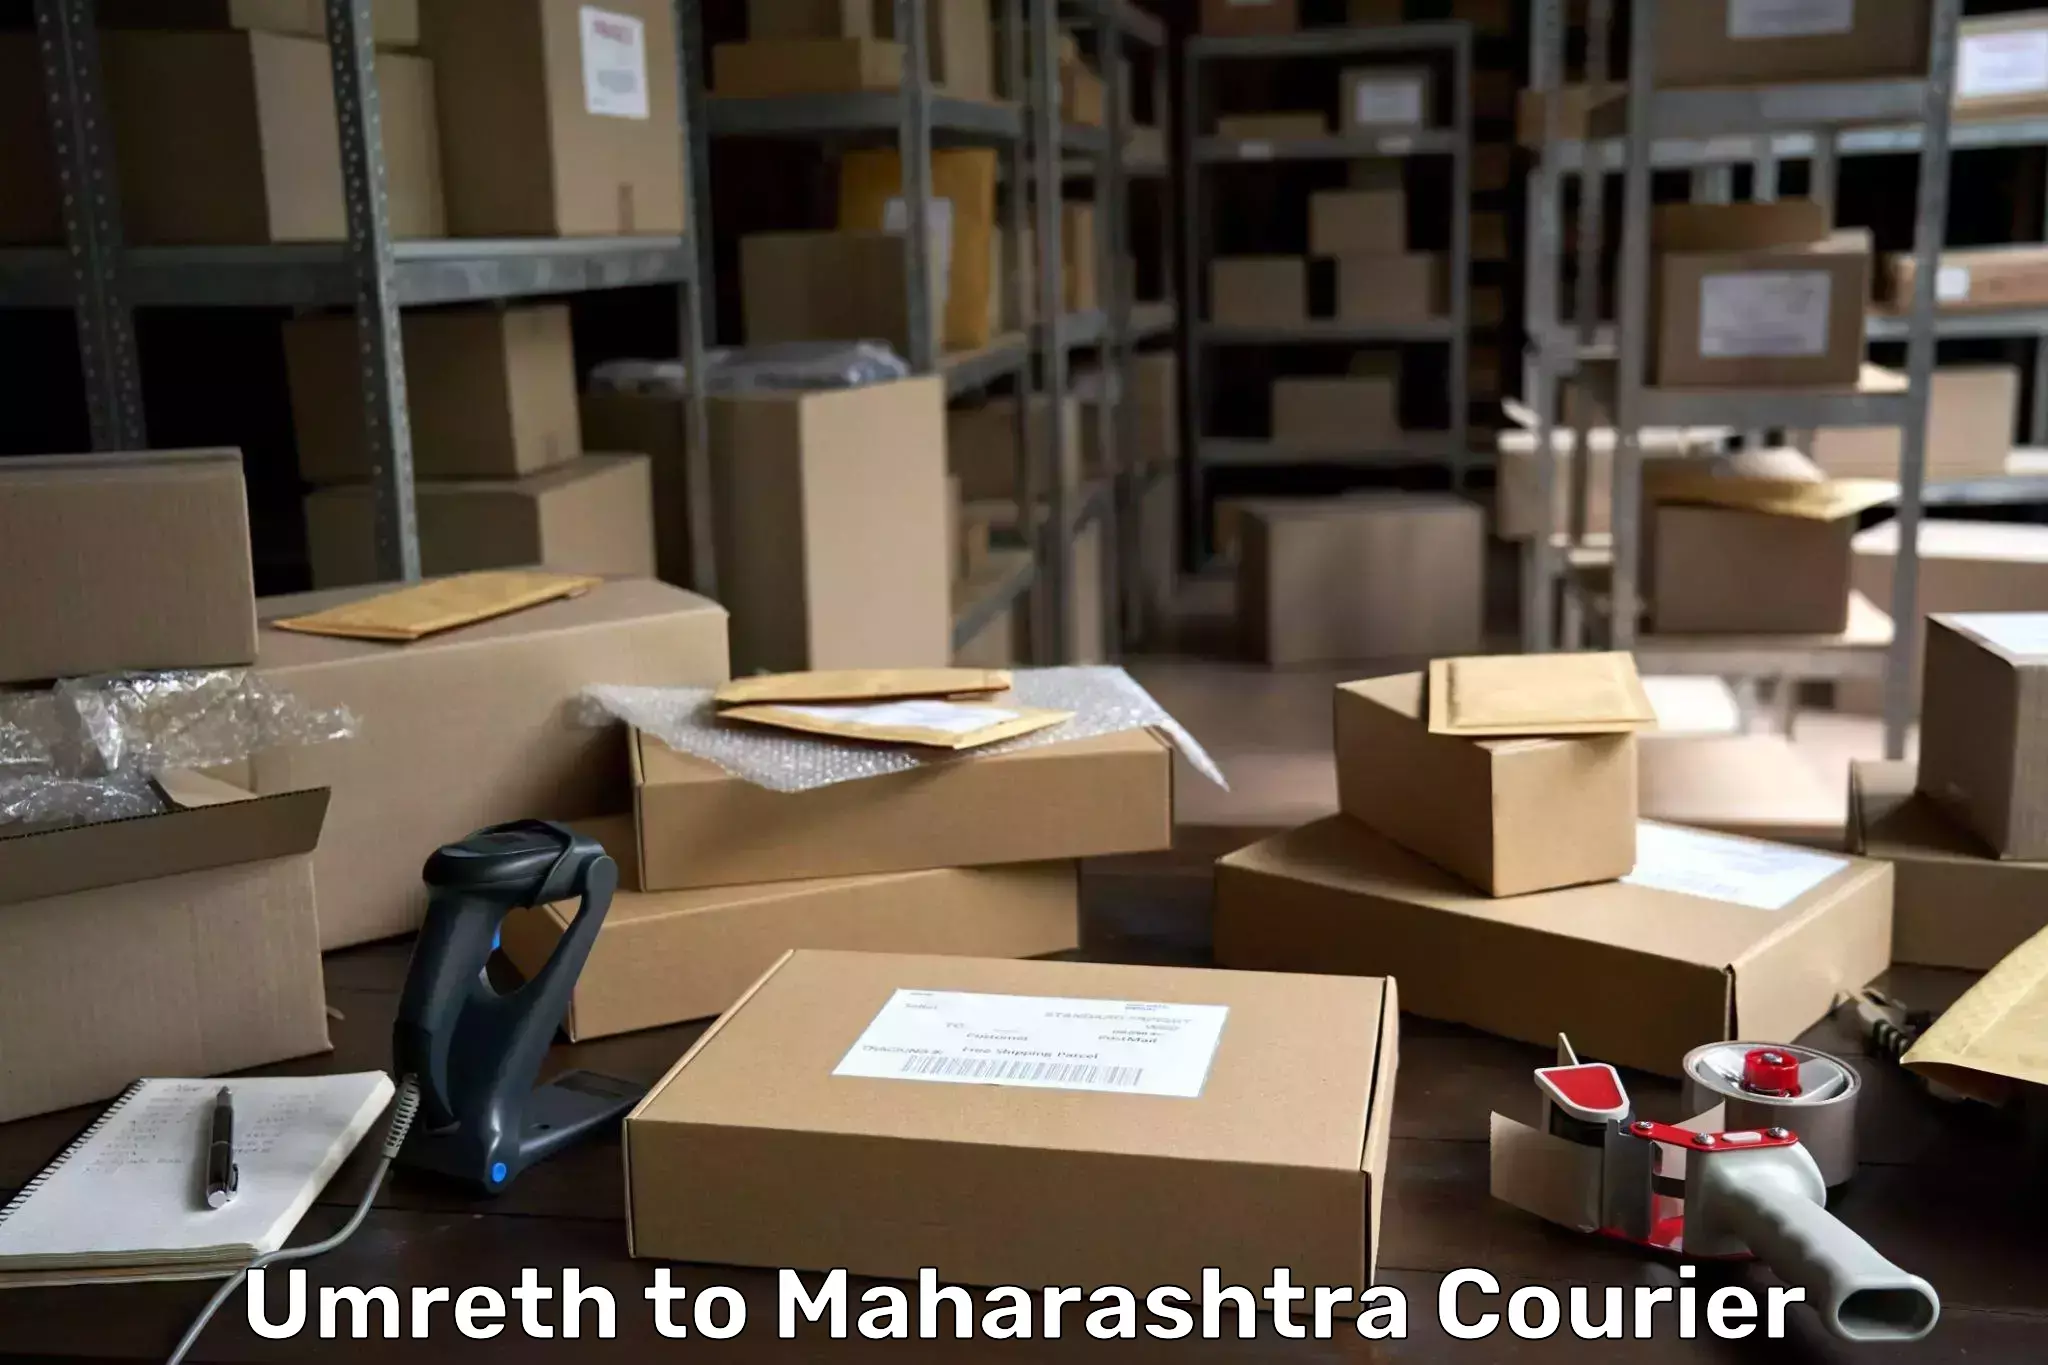 International parcel service Umreth to Maharashtra